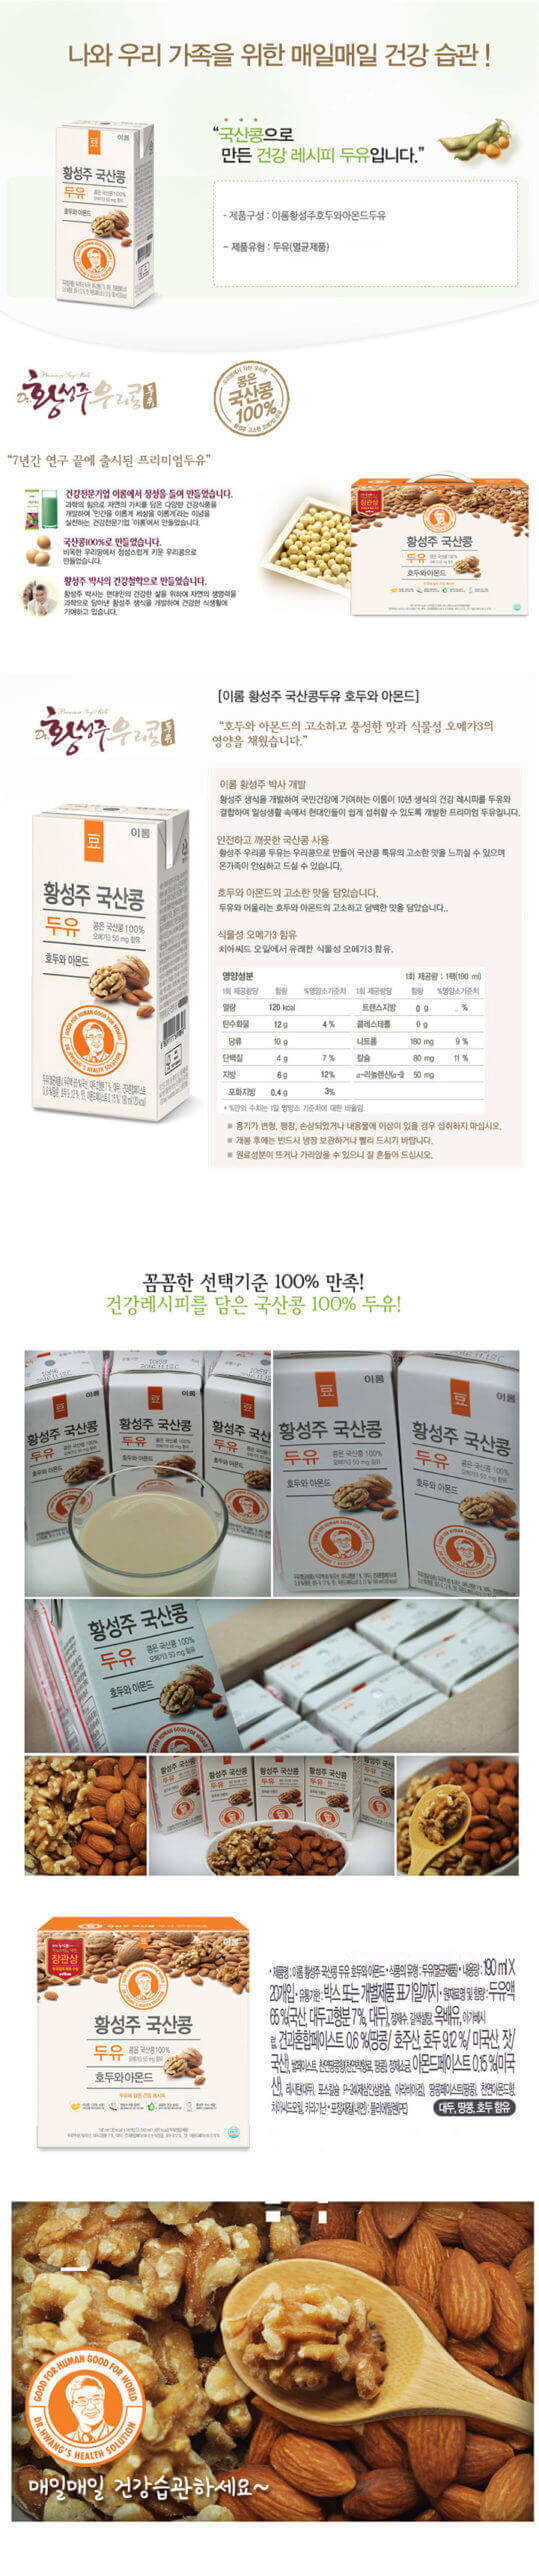 韓國食品-[이롬] 황성주 국산콩 두유[호두와아몬드] 190ml